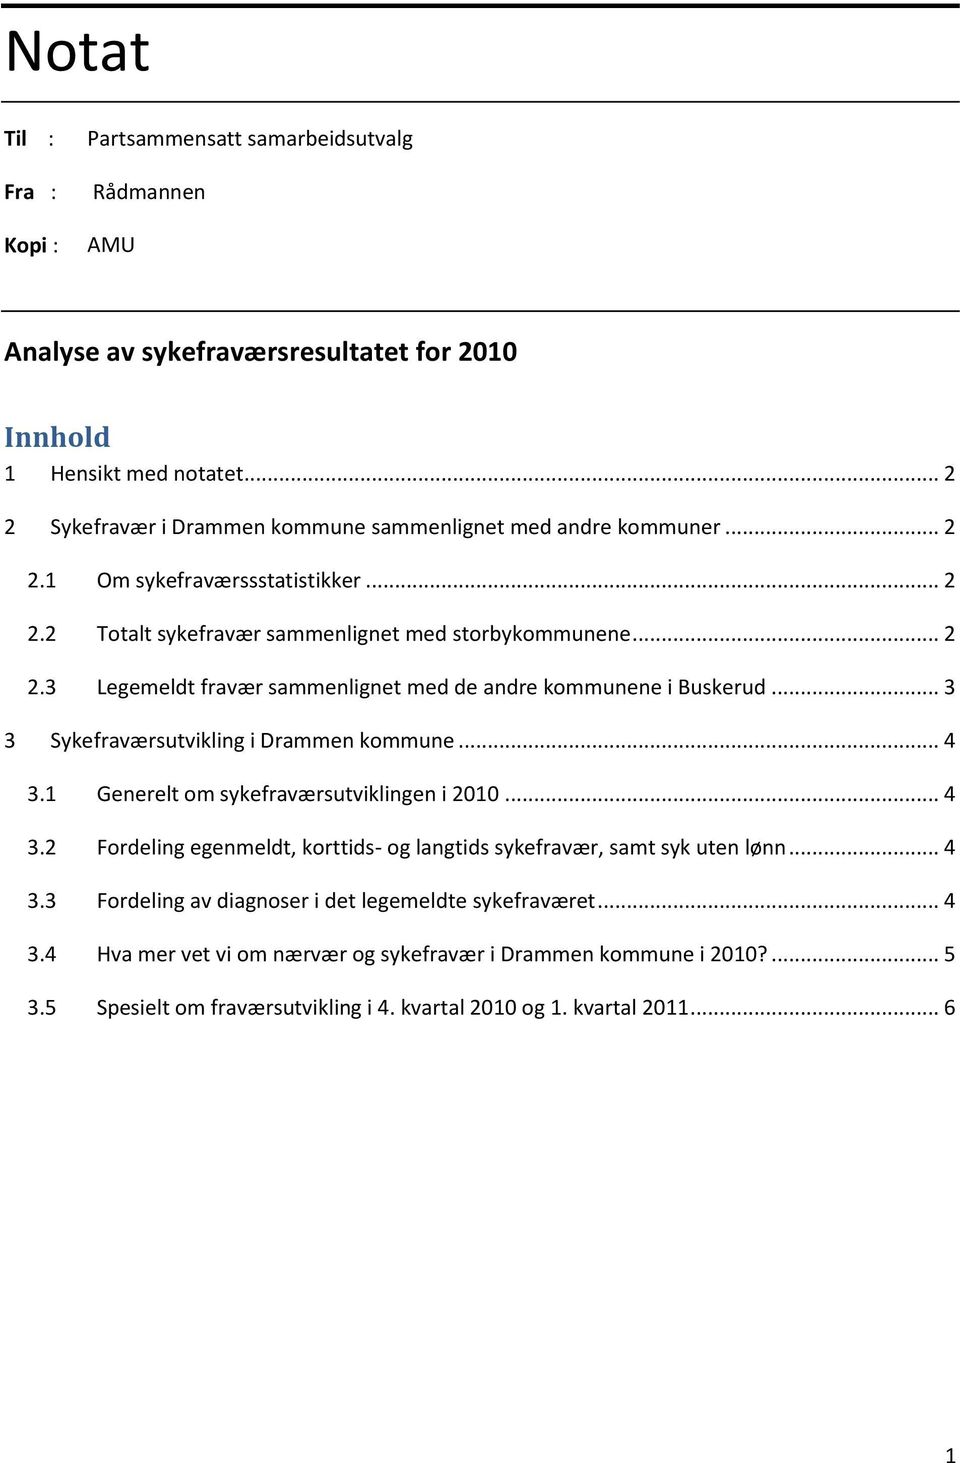 .. 3 3 Sykefraværsutvikling i Drammen kommune... 4 3.1 Generelt om sykefraværsutviklingen i 2010... 4 3.2 Fordeling egenmeldt, korttids- og langtids sykefravær, samt syk uten lønn... 4 3.3 Fordeling av diagnoser i det legemeldte sykefraværet.